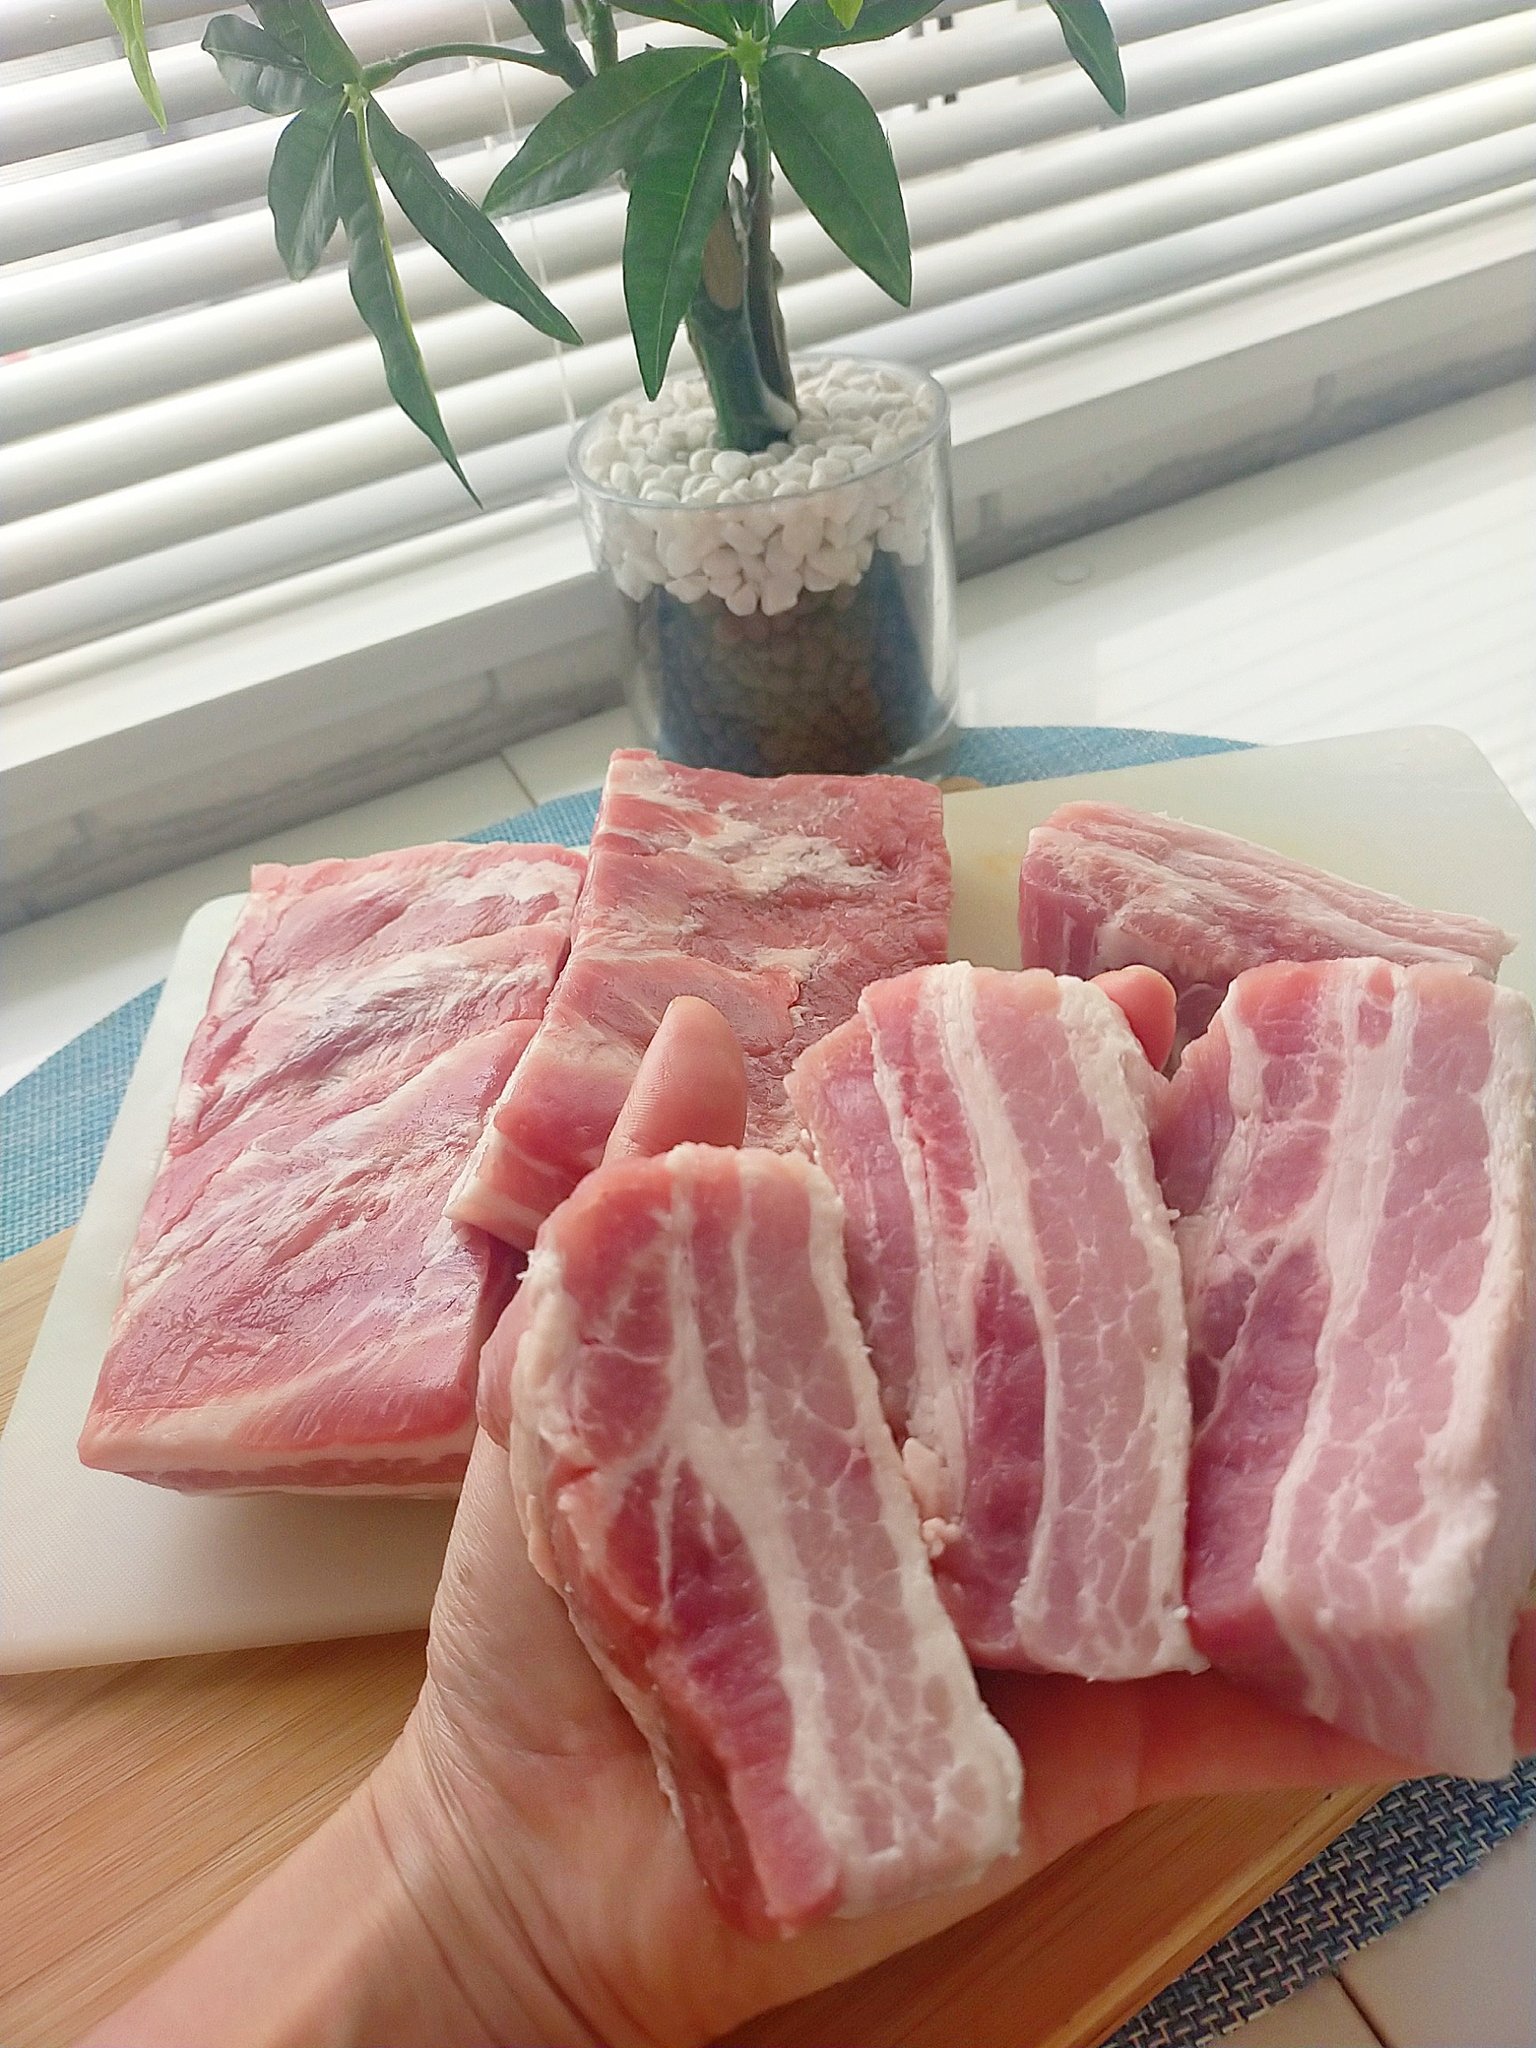 Tomo 1 2kgの豚肉 赤身と脂身のバランスがめちゃくちゃ好みのやーつ お料理 肉祭り T Co Oaxwb1nnpd Twitter